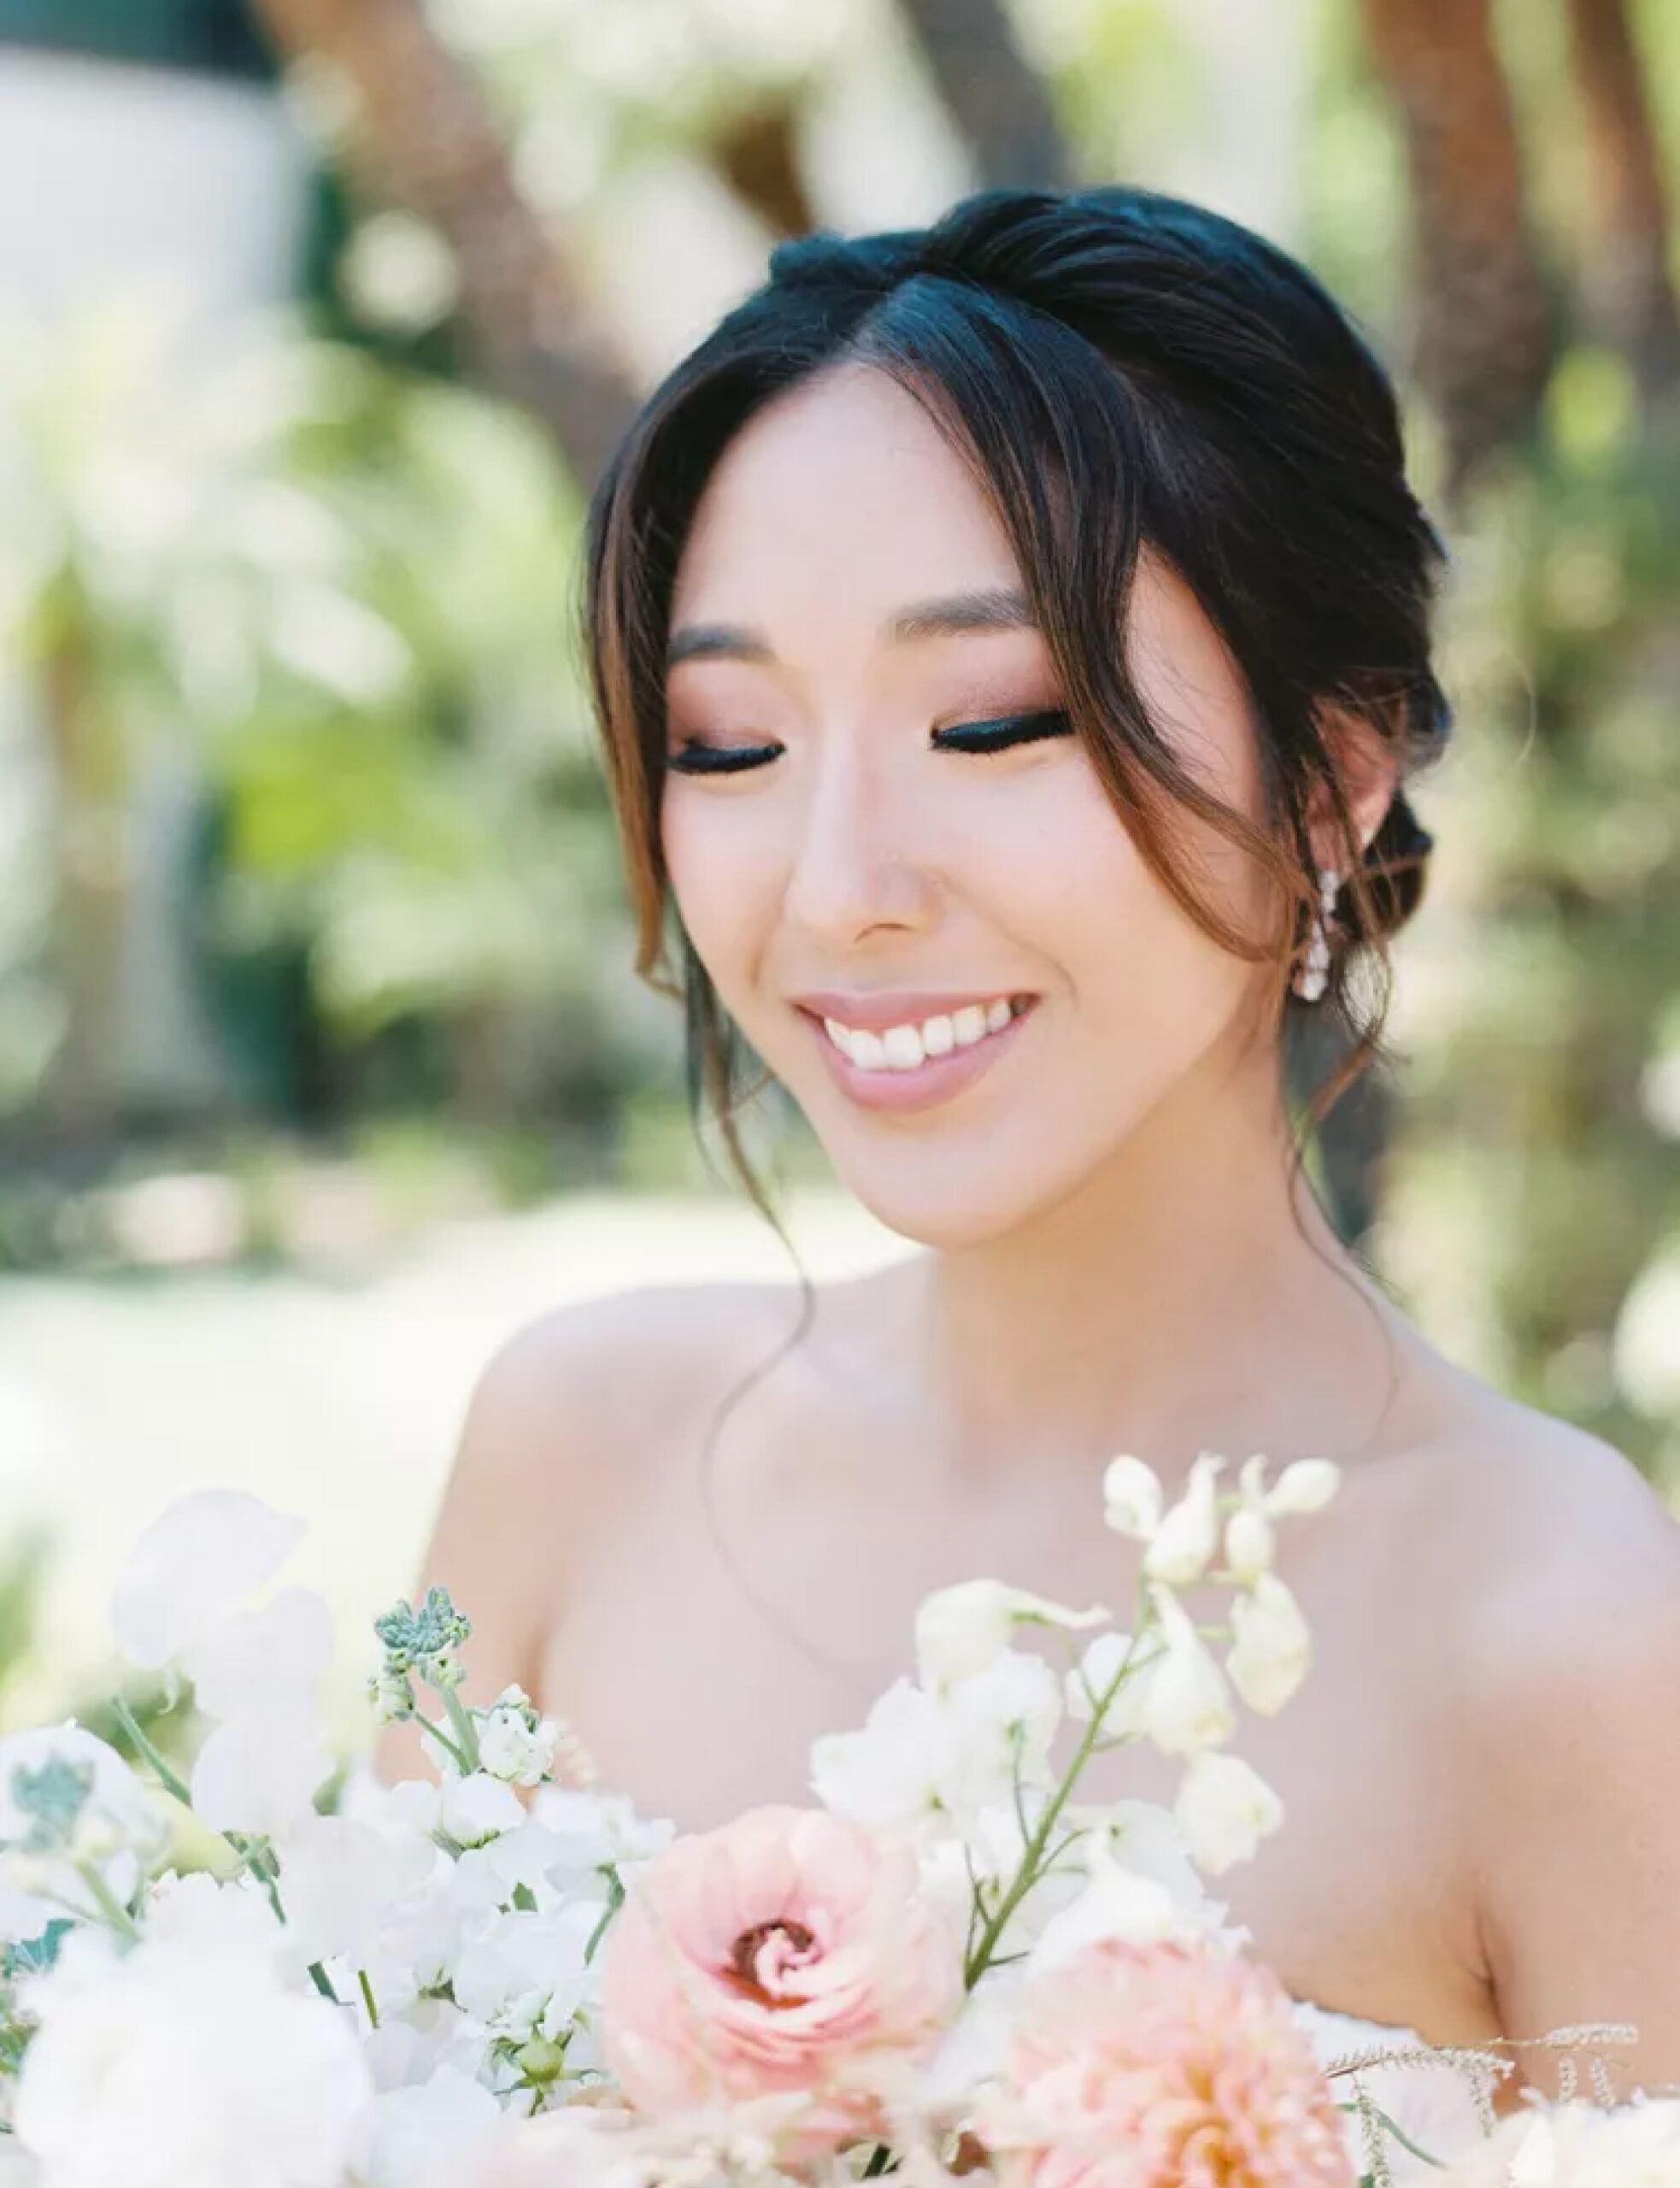 https://www.brides.com/wedding-makeup-ideas-real-brides-4797560